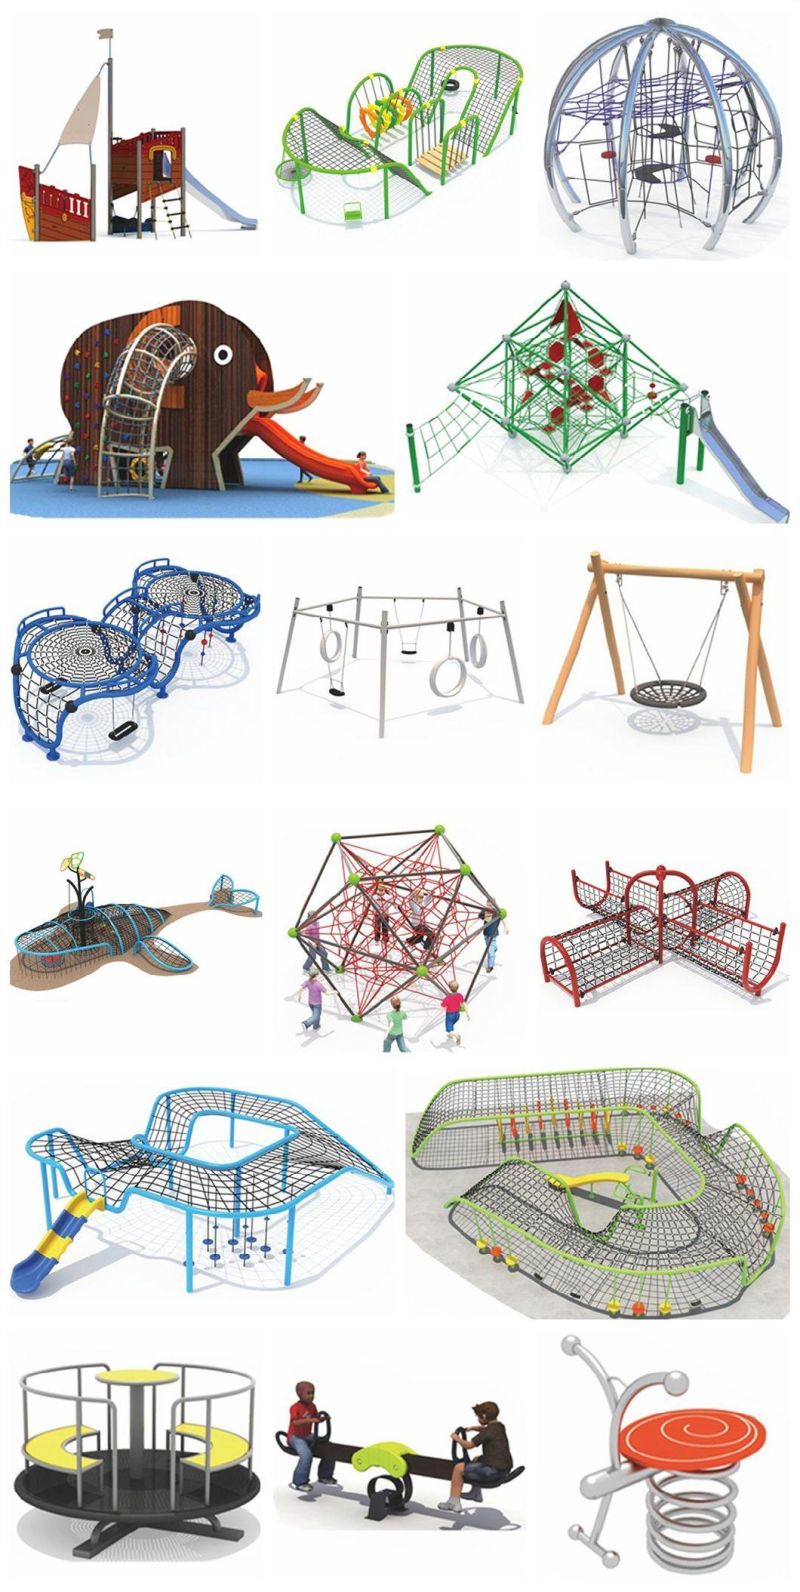 Park Outdoor Stainless Steel Whale Slide Children Playground Equipment